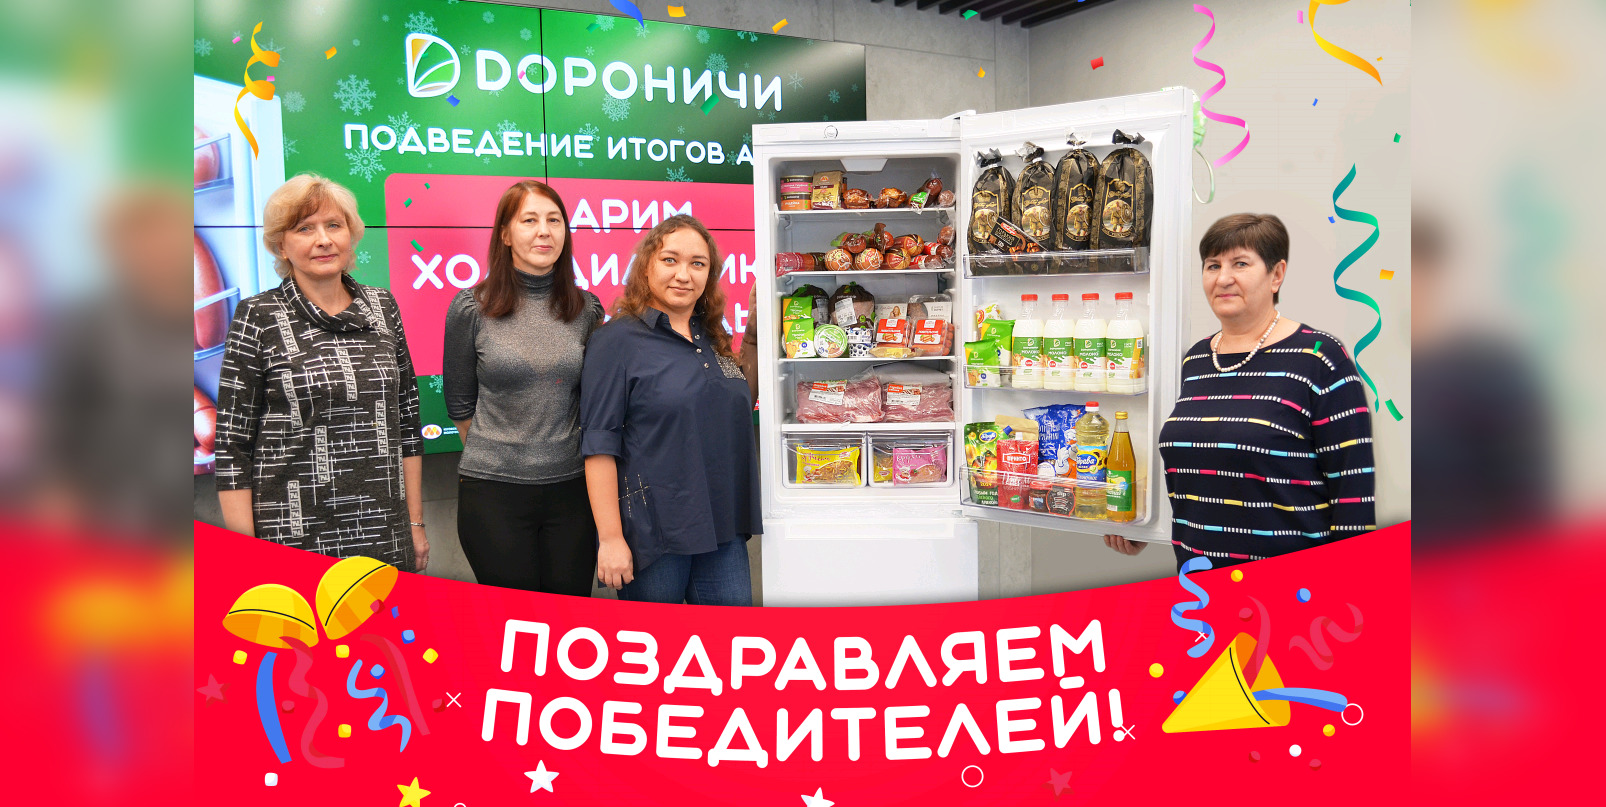 Холодильники еды: вкусные итоги акции “Дороничи”!